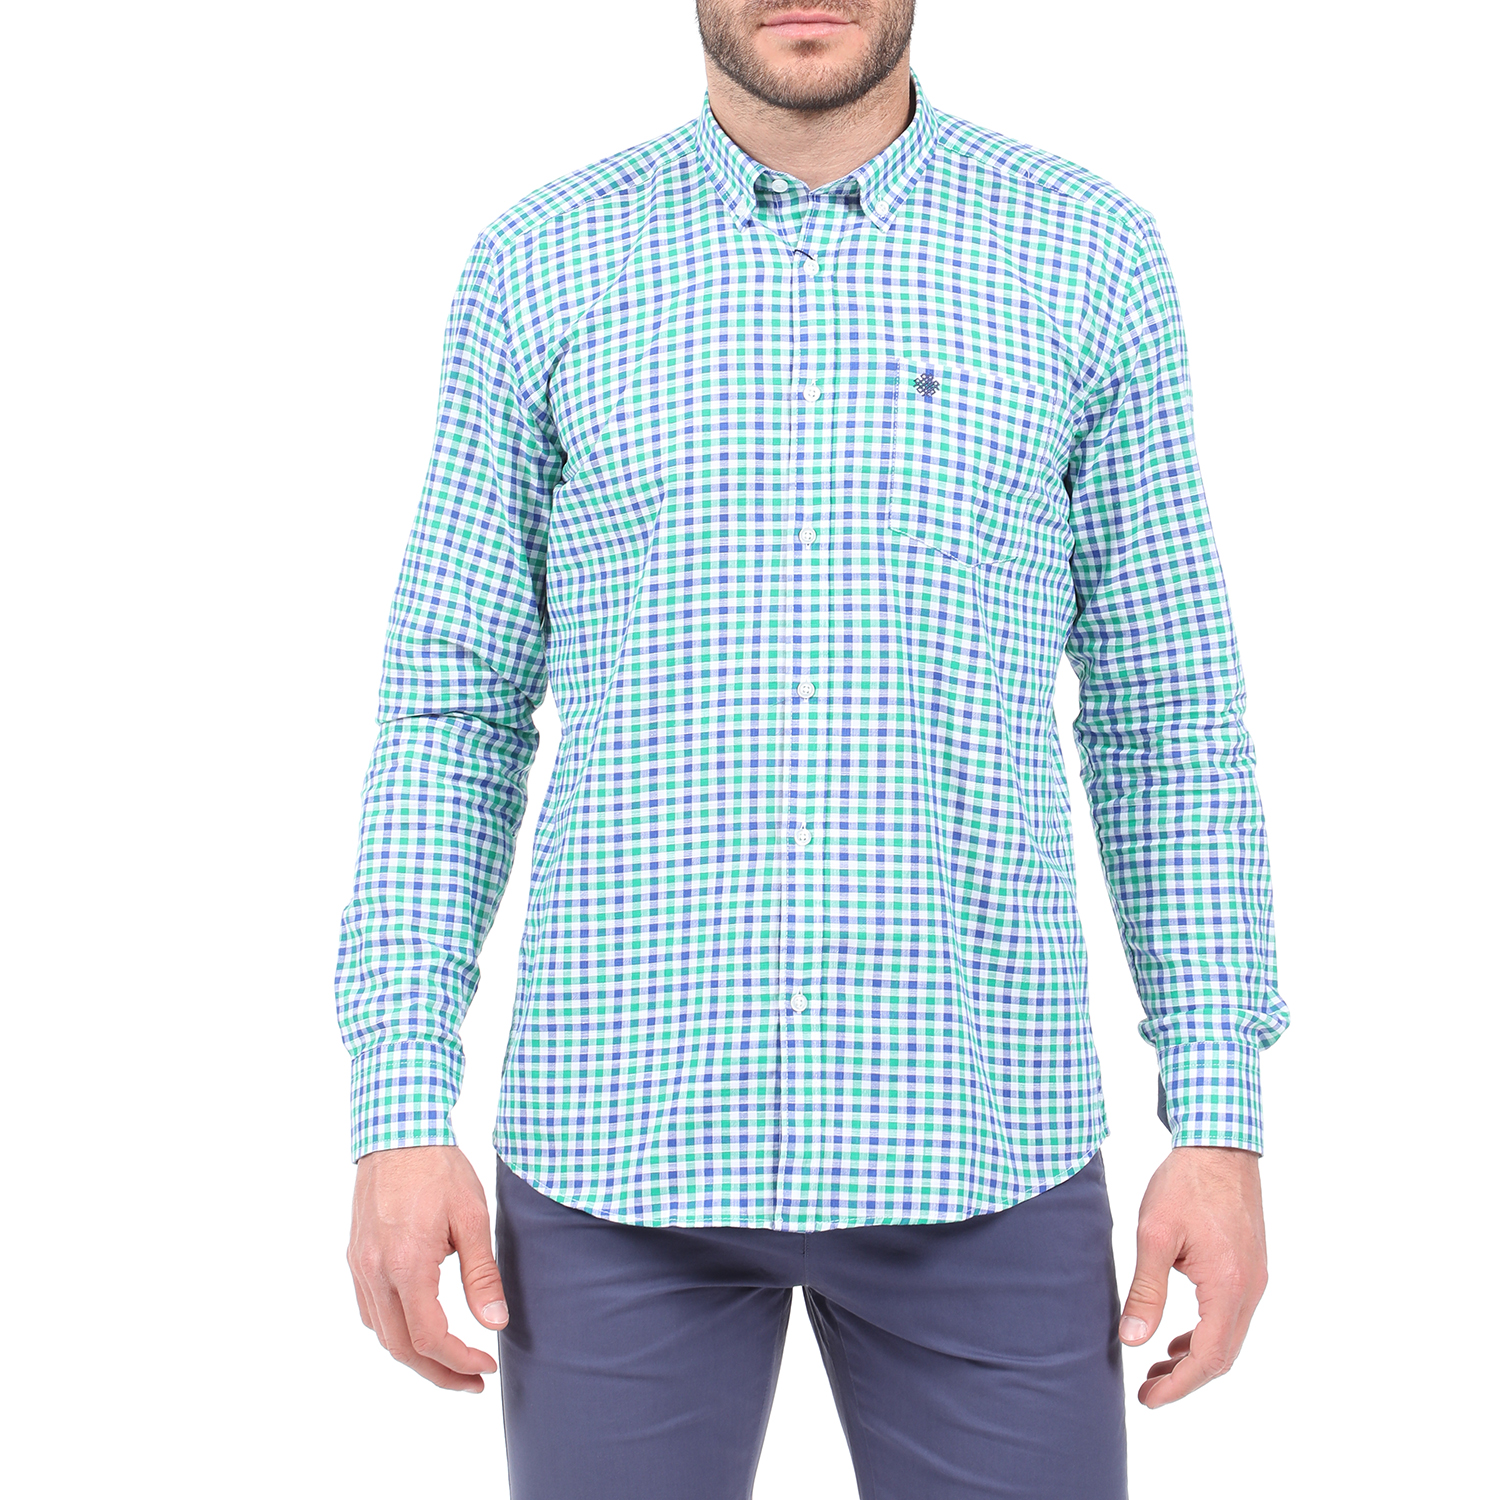 Ανδρικά/Ρούχα/Πουκάμισα/Μακρυμάνικα DORS - Ανδρικό πουκάμισο DORS πράσινο μπλε